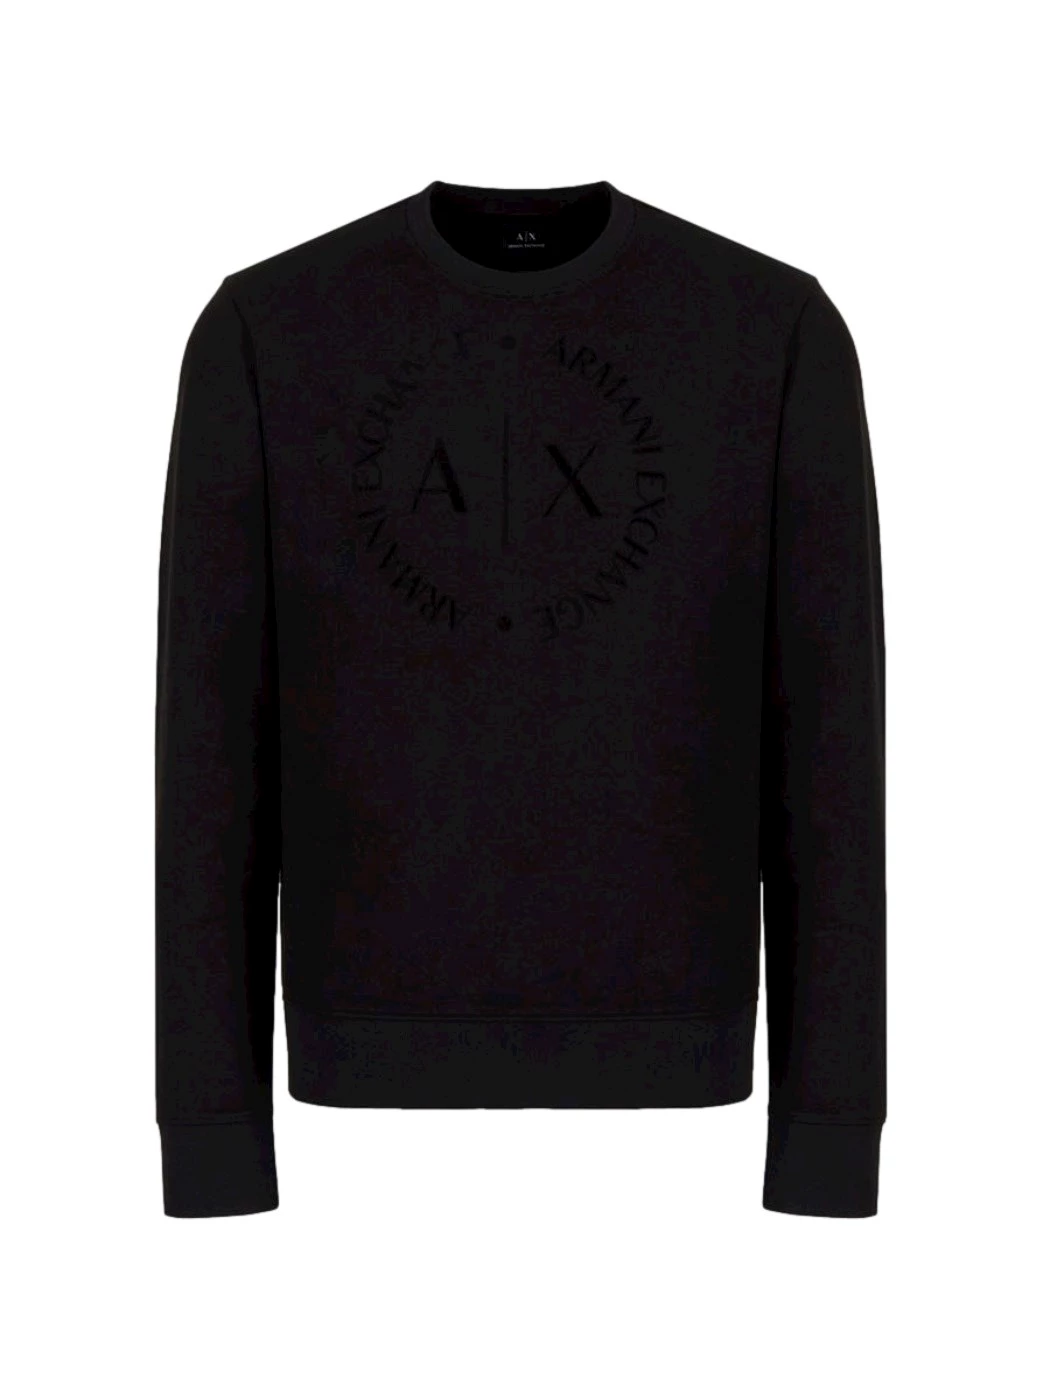 Sweatshirt with maxi-logo round Armani Exchange